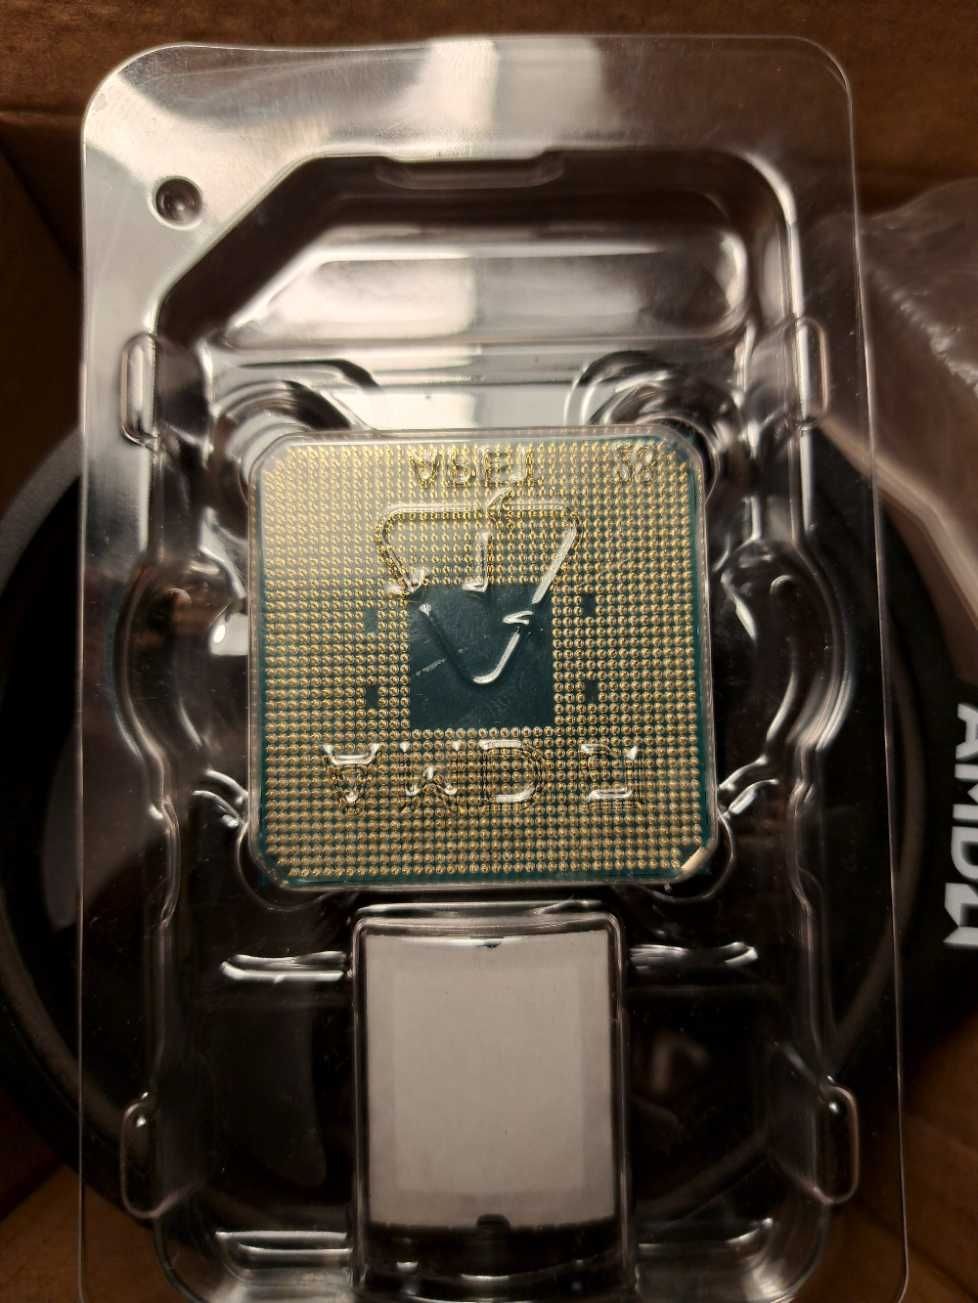 Procesor AMD Ryzen 3100 BOX z wiatrakiem